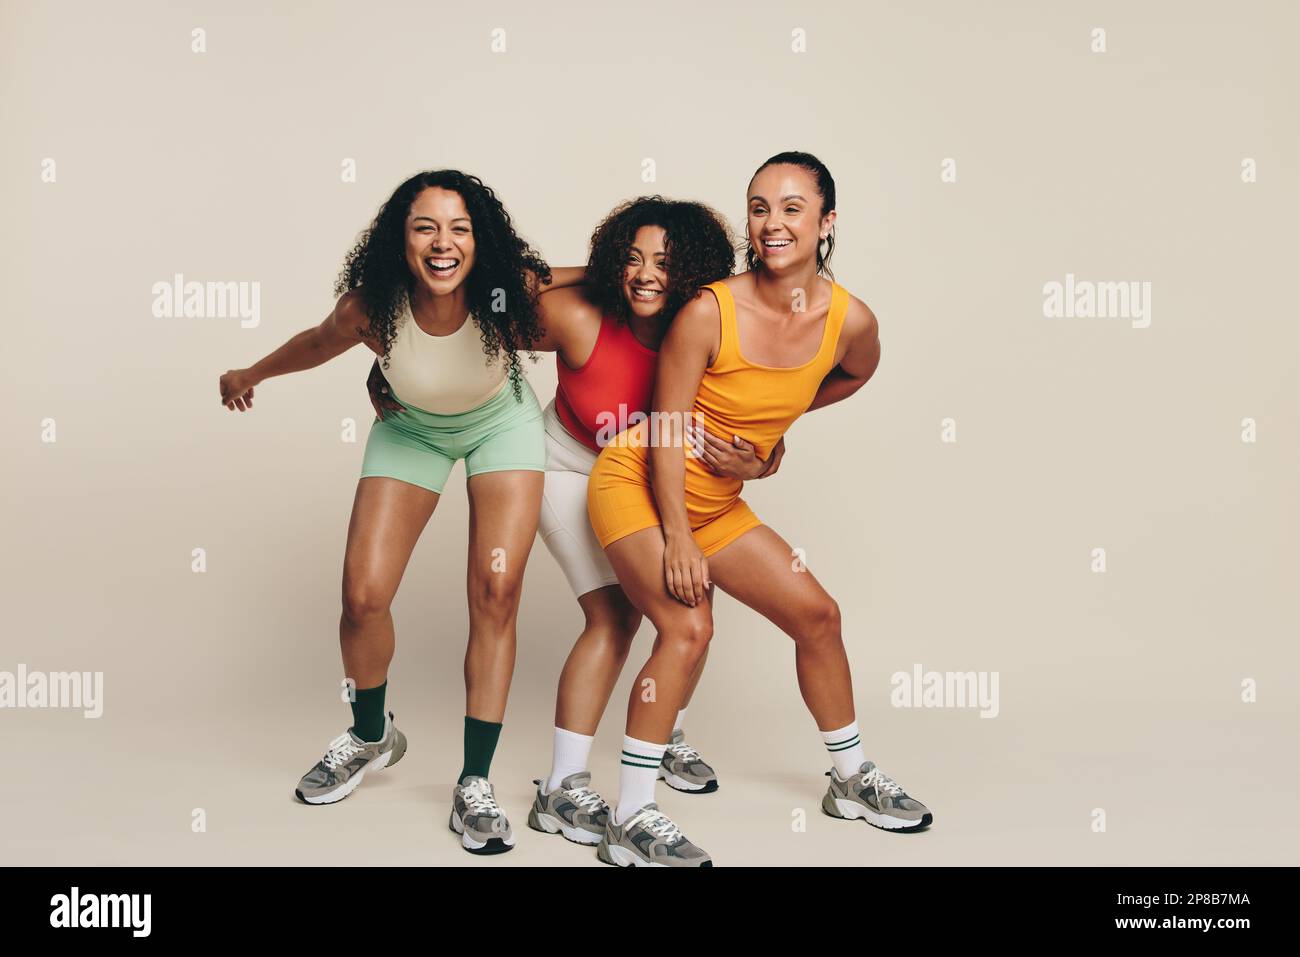 Eine Gruppe junger Sportlerinnen, die lachen und Spaß in Fitnesskleidung haben und ihre Liebe zu Sport und Bewegung feiern. Fröhliche junge Sportlerinnen dem Stockfoto